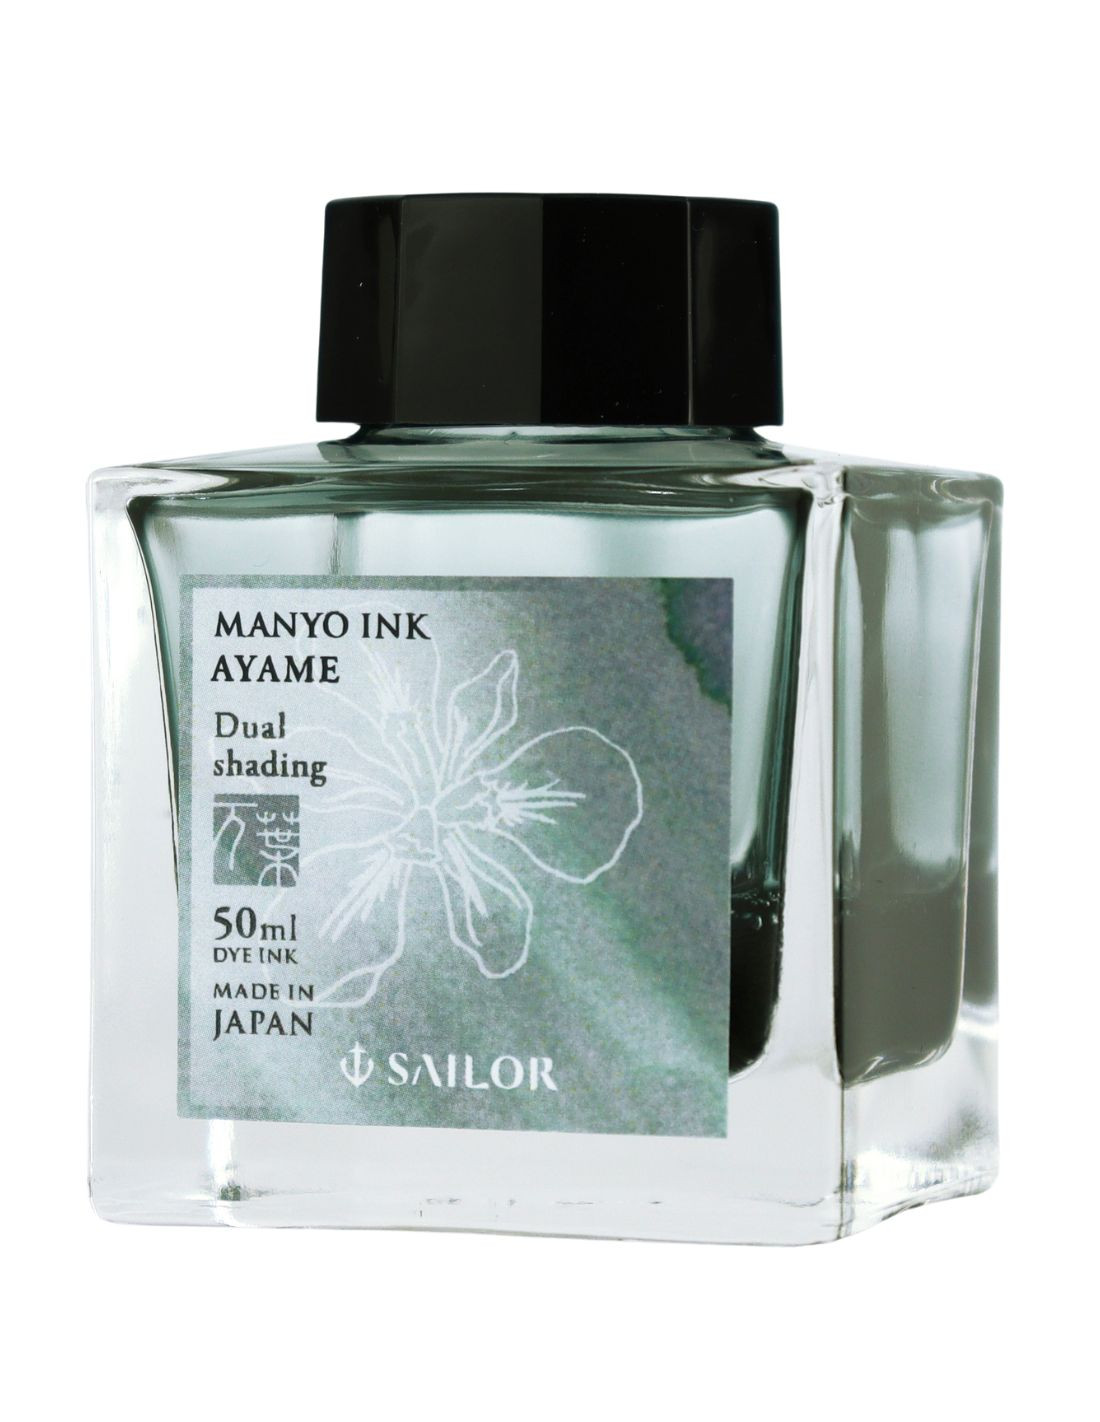 Manyo Dual Sading Ink - Ayame - 50ml - Sailor